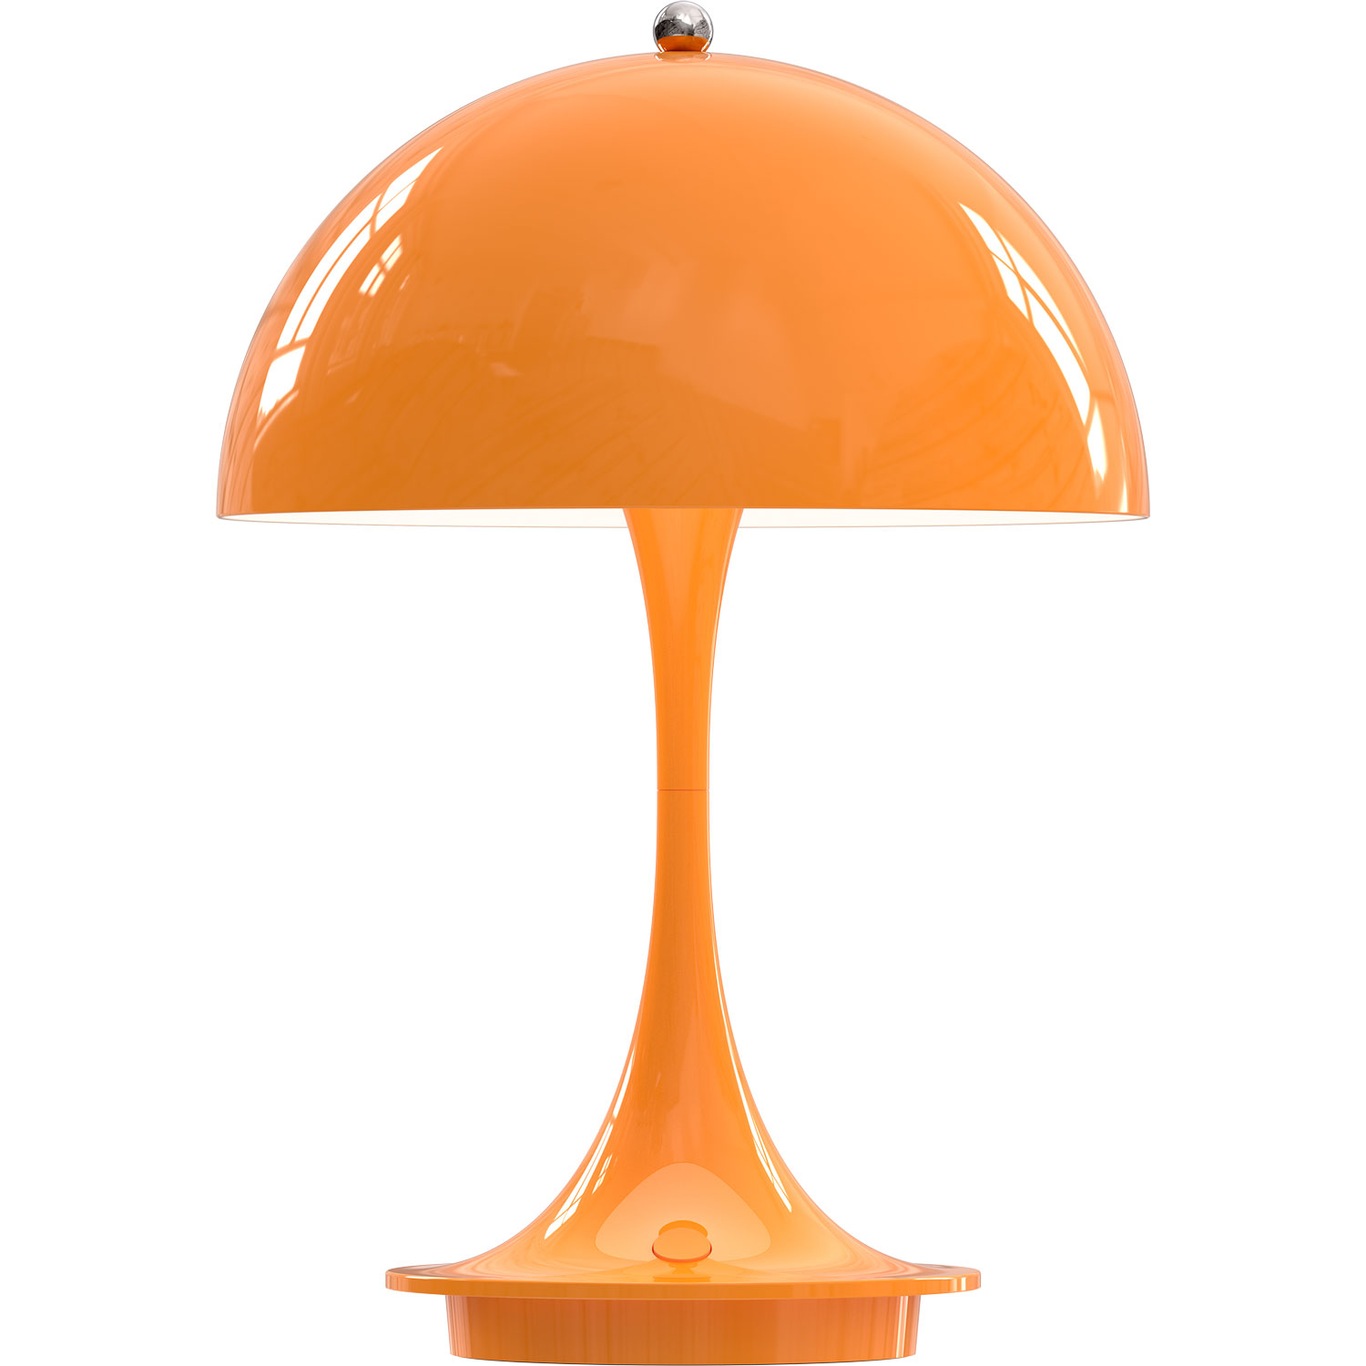 Panthella 160 Table Lamp Portable, Orange